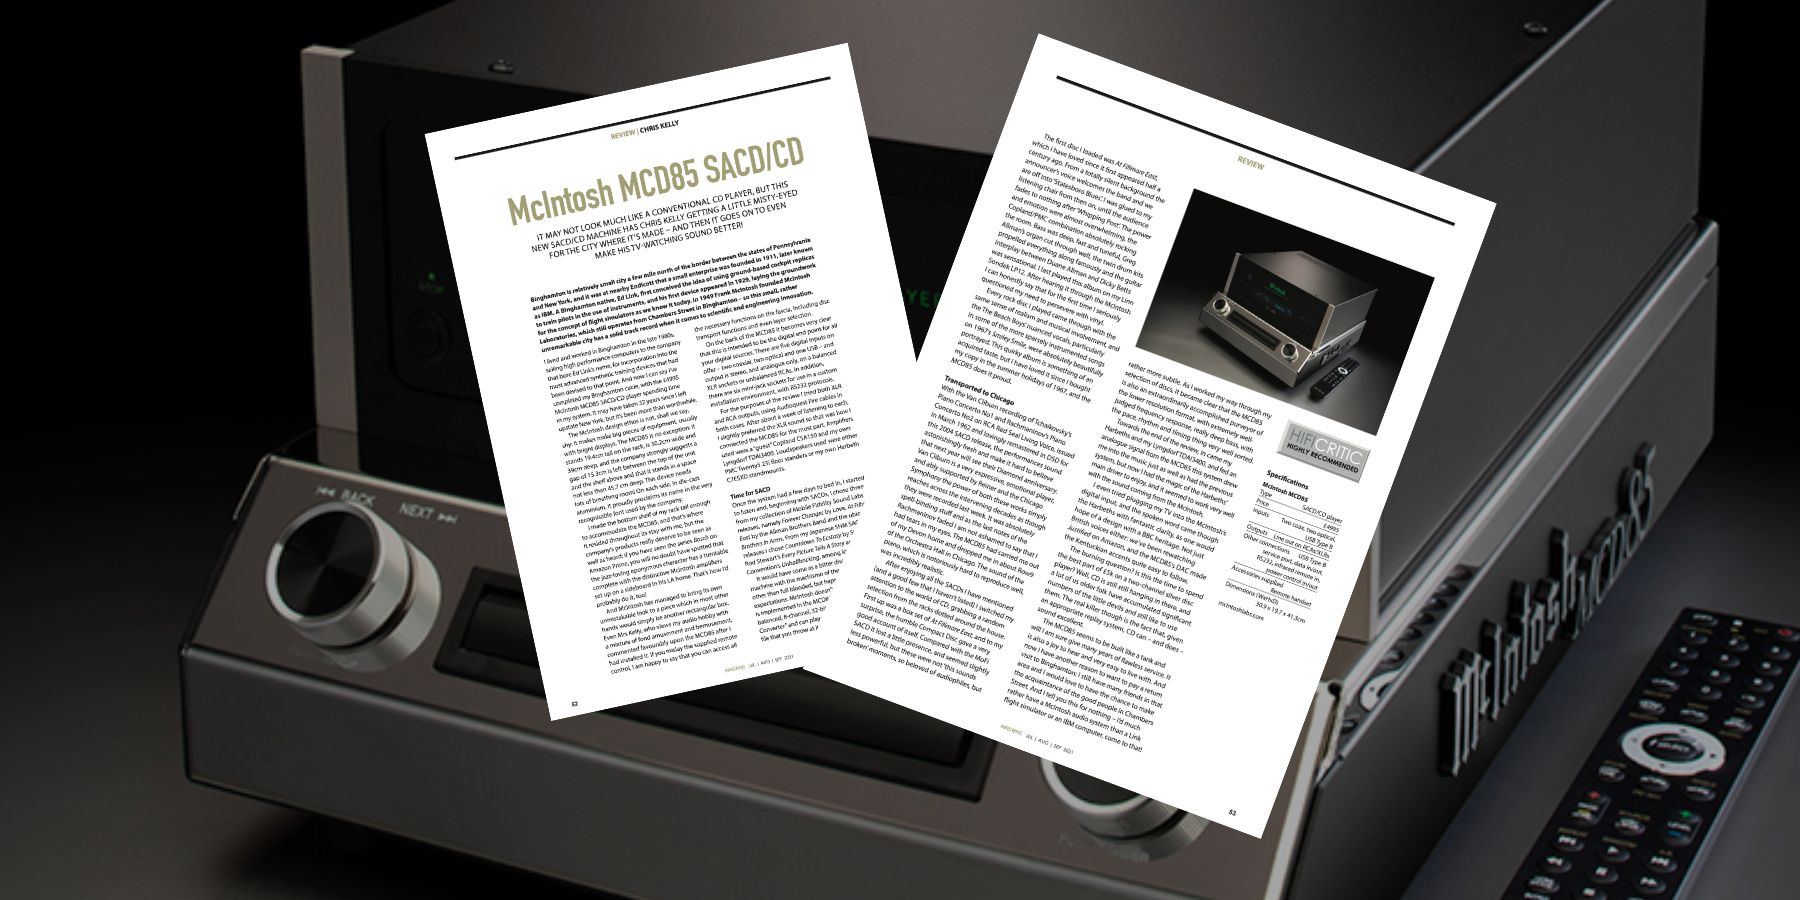 HIFICRITIC reviews the new McIntosh MCD85 SACD/CD player